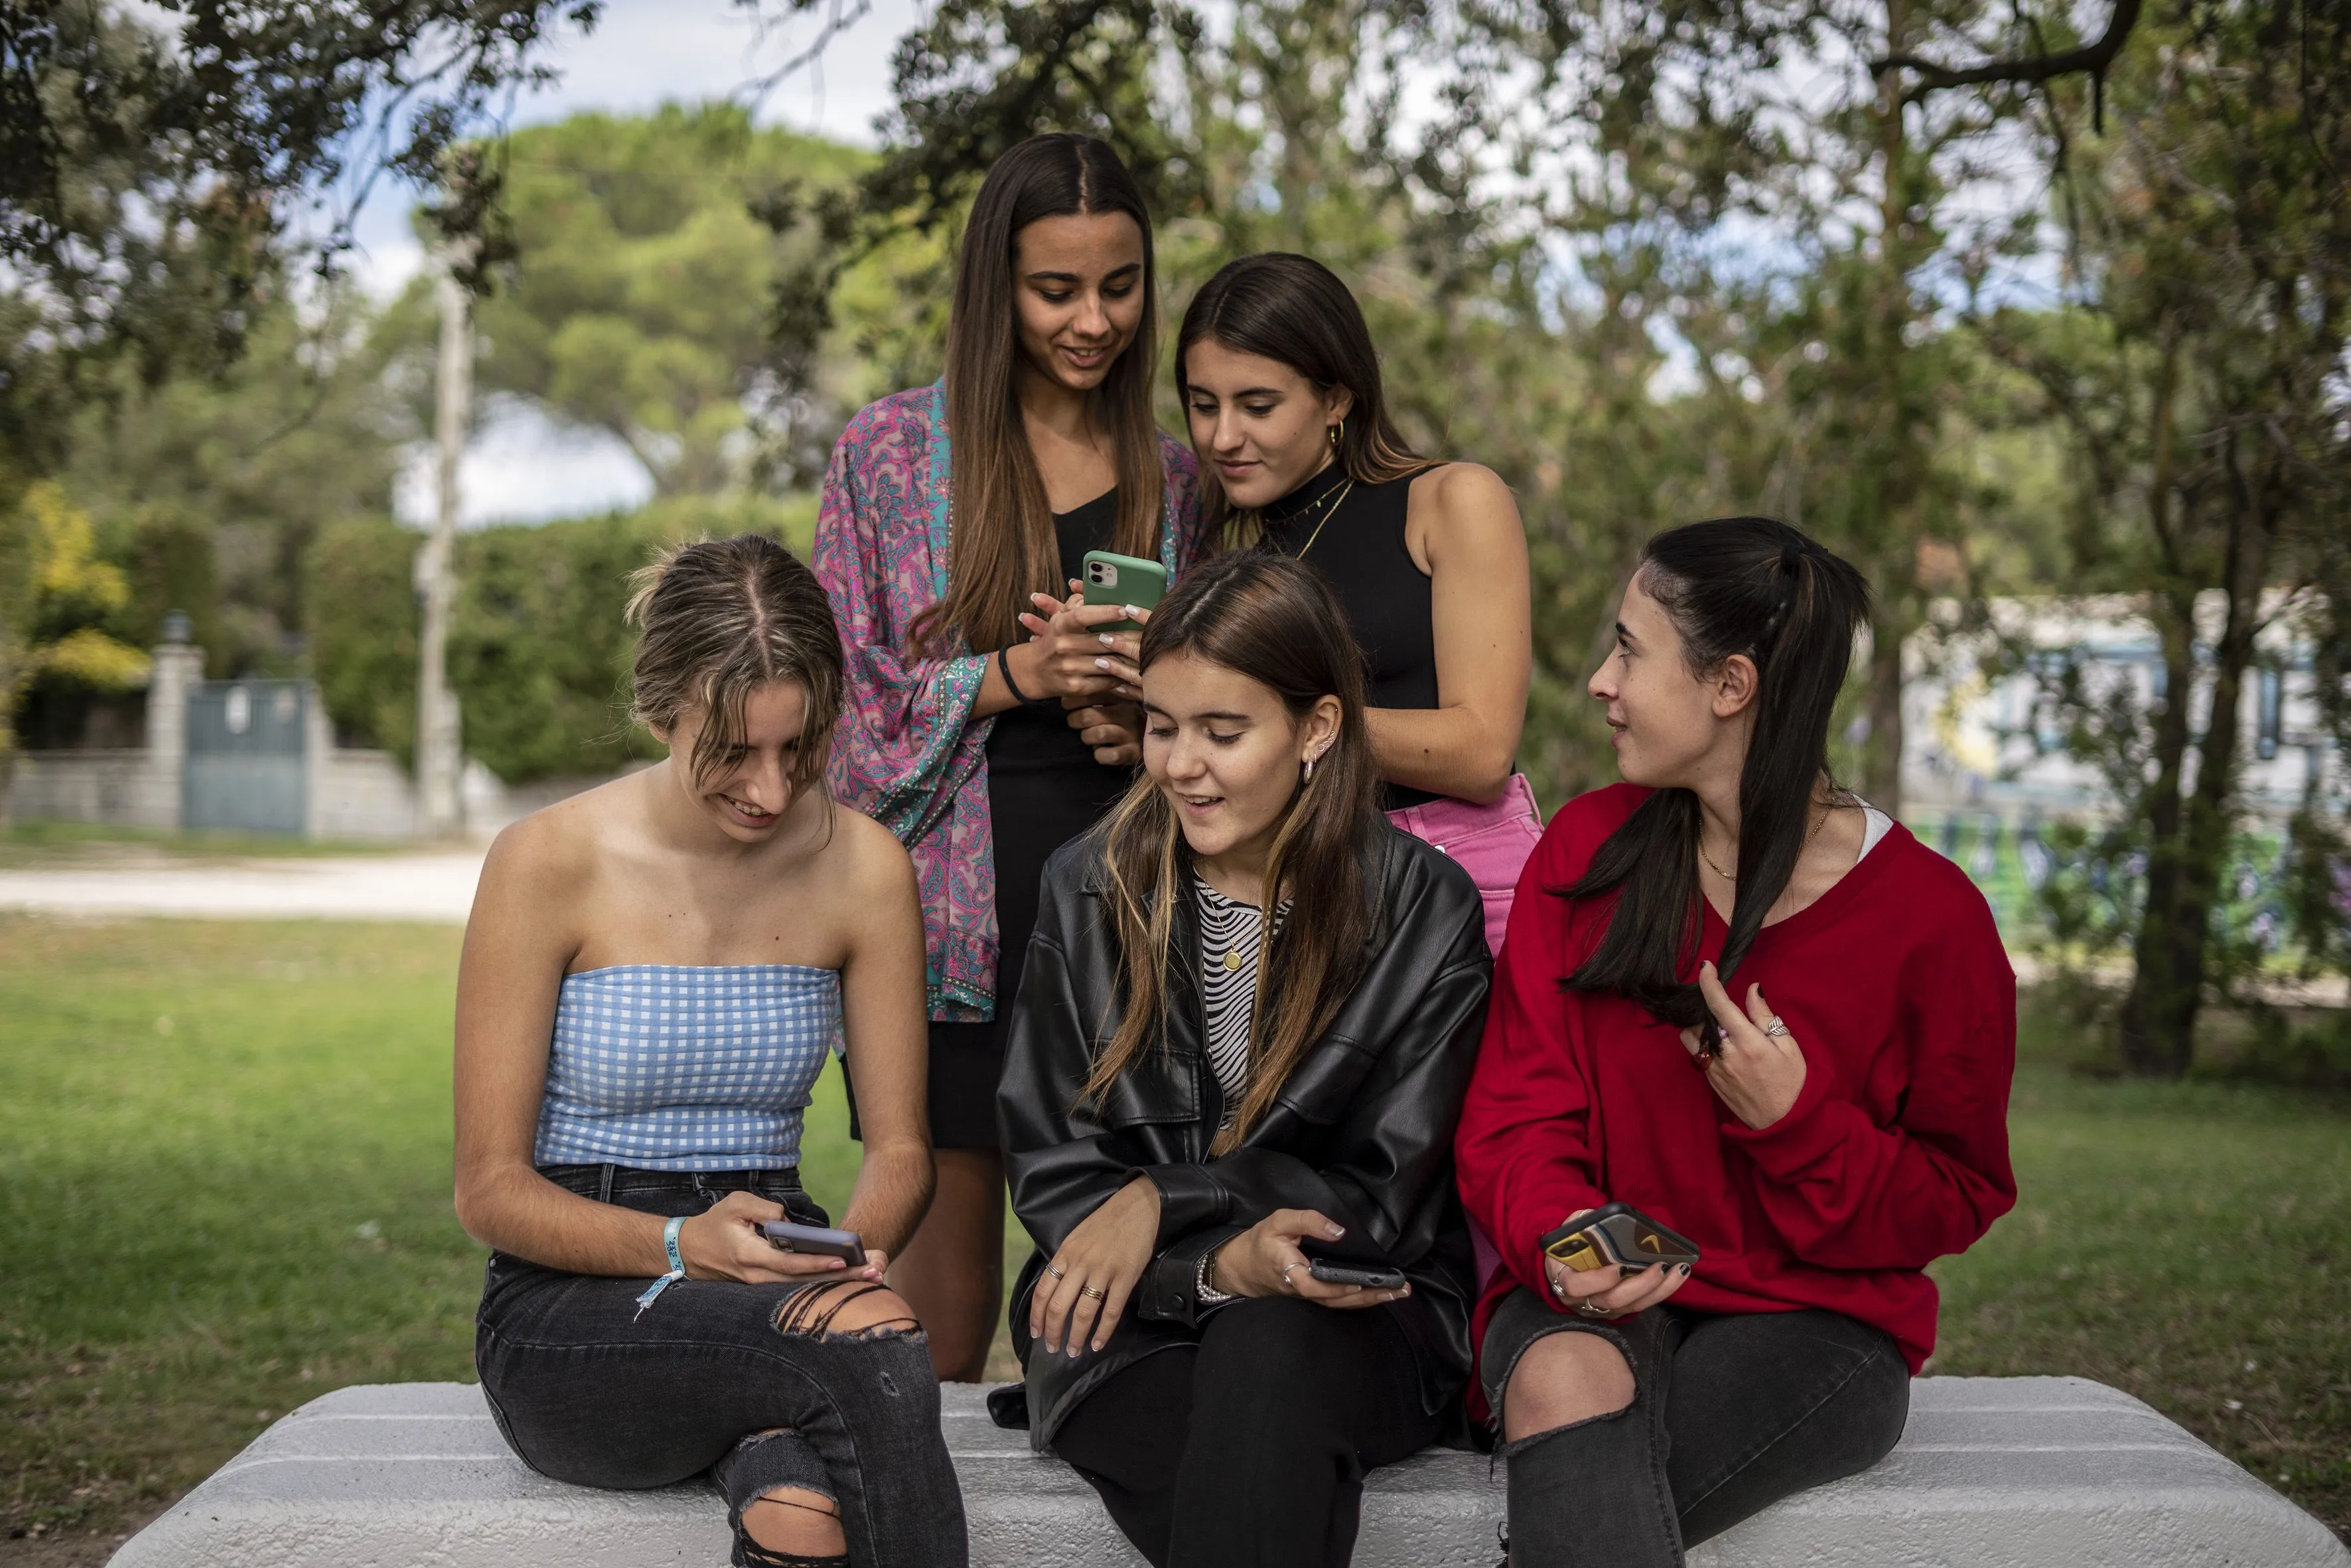 La adolescencia sin filtros en Instagram | Sociedad | EL PAÍS